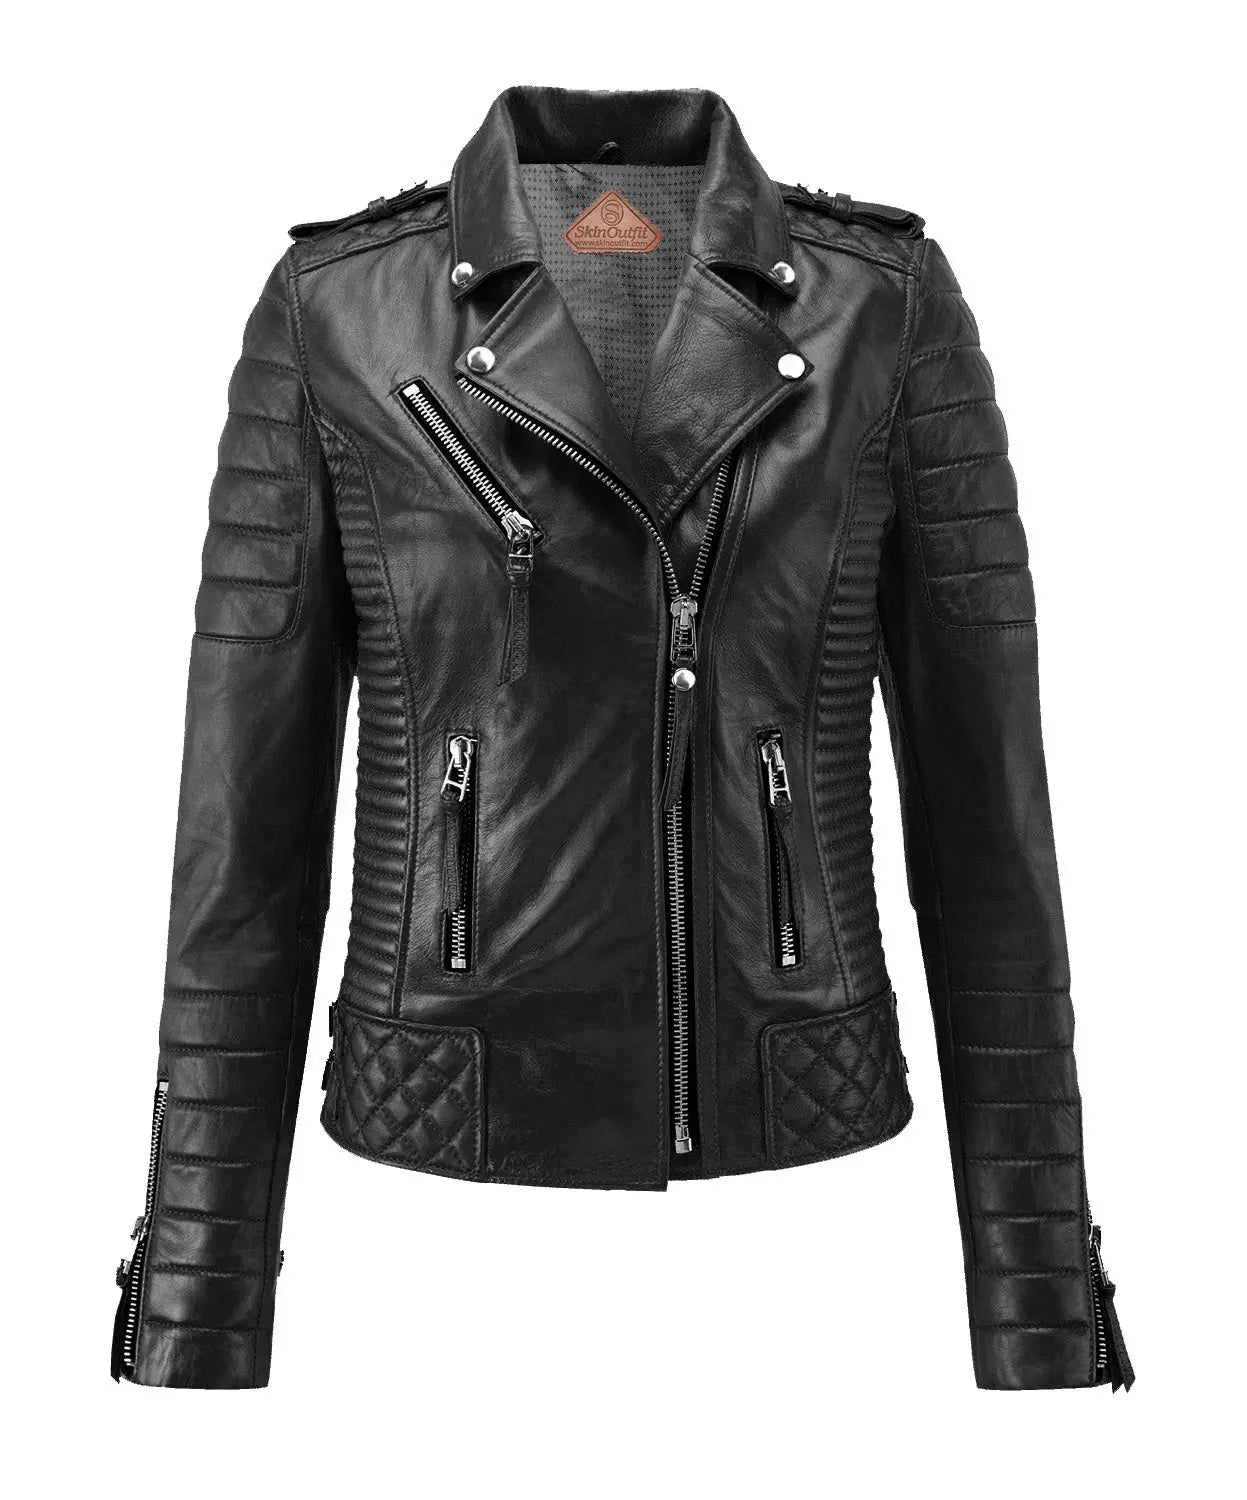 Skinoutfit Women's Biker Leather Jacket